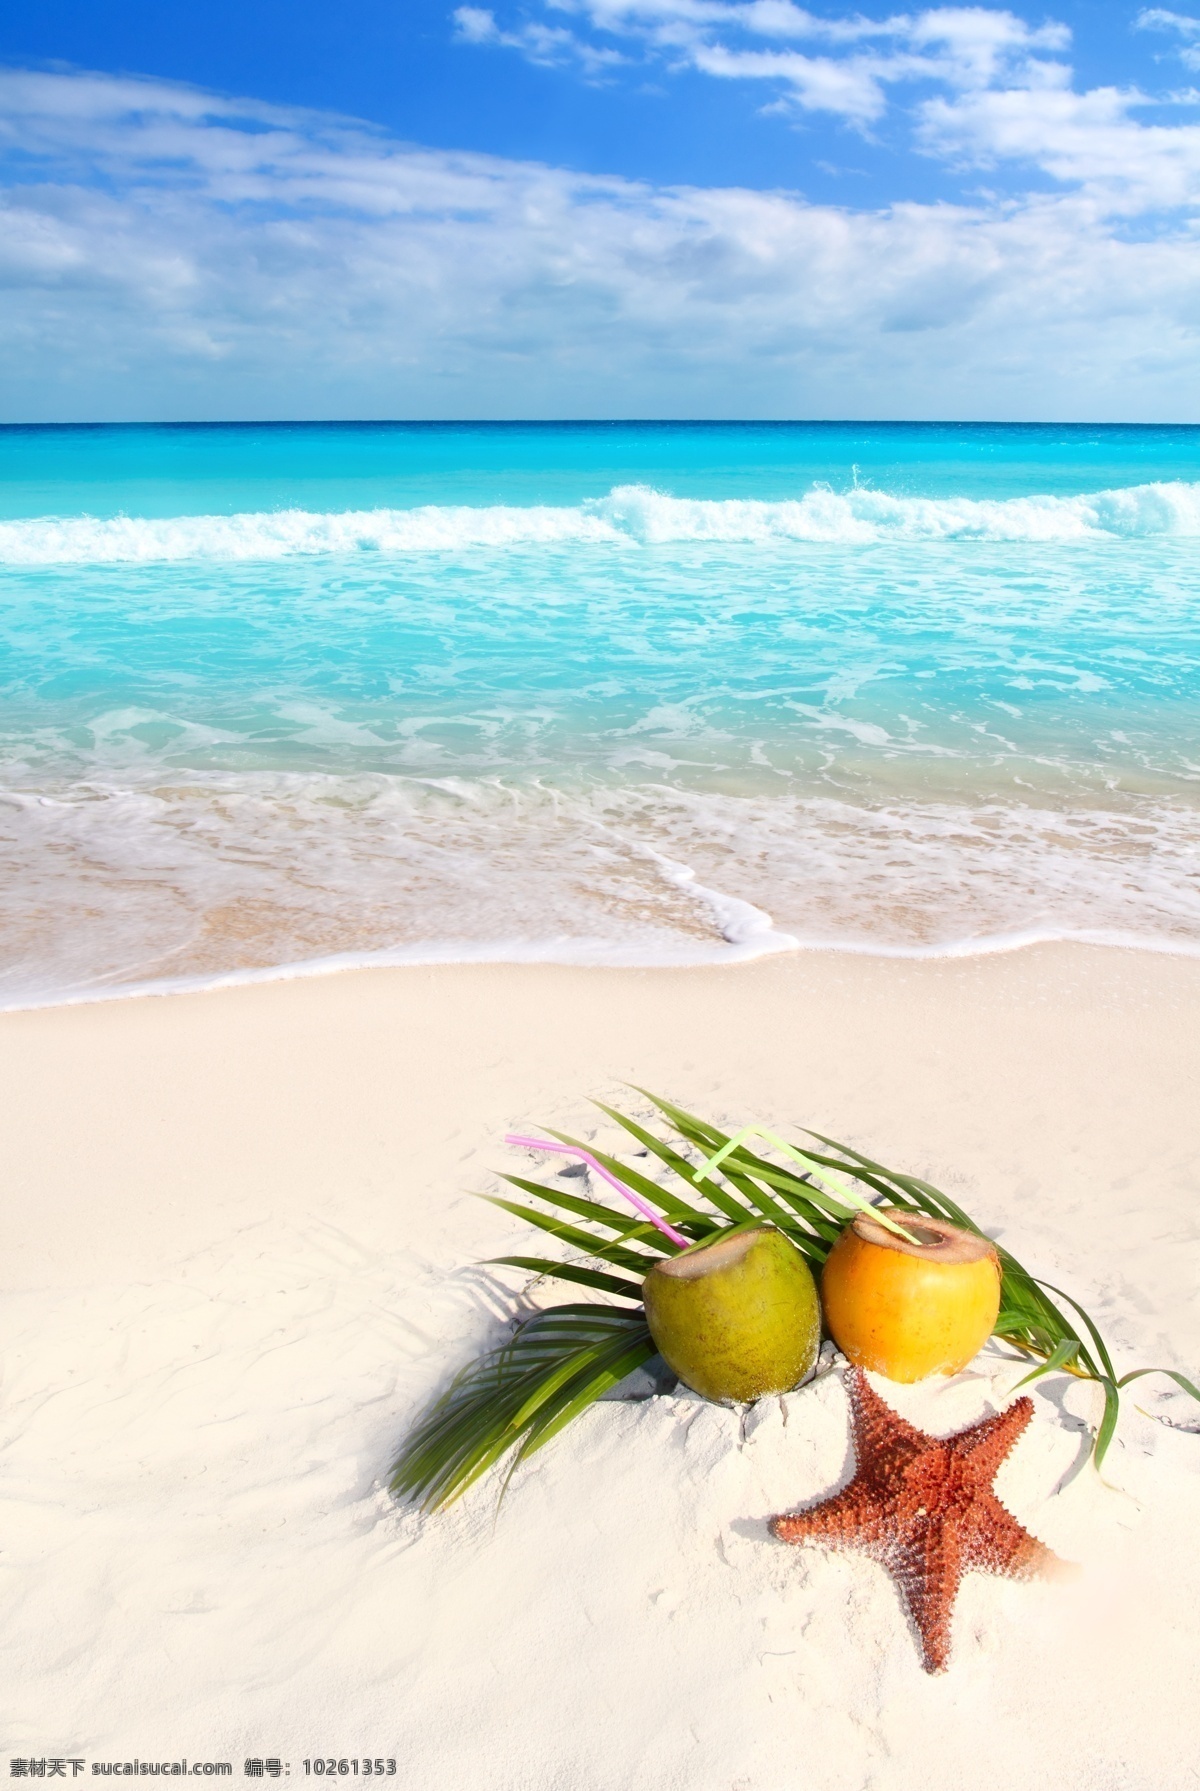 沙滩 上 椰子汁 海星 椰子 海边 海滩风景 大海风景 海面风景 美丽风景 大海图片 风景图片